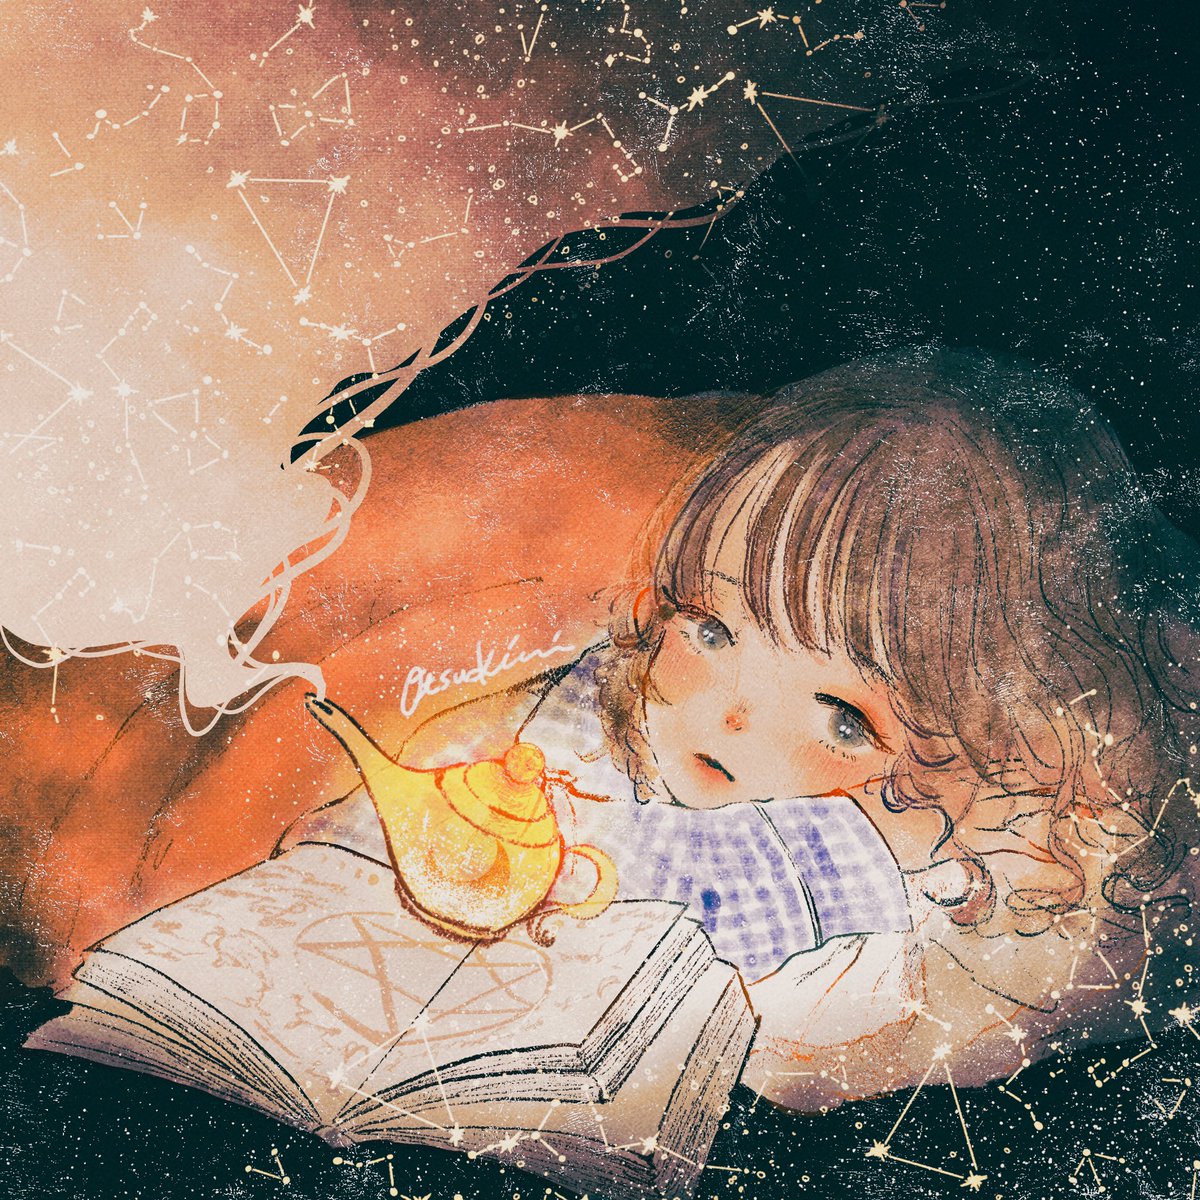 「星空を呼ぶランプ#イラスト #illustraion 」|おつきみ【4/8-9グループ展】大阪イロリムラのイラスト